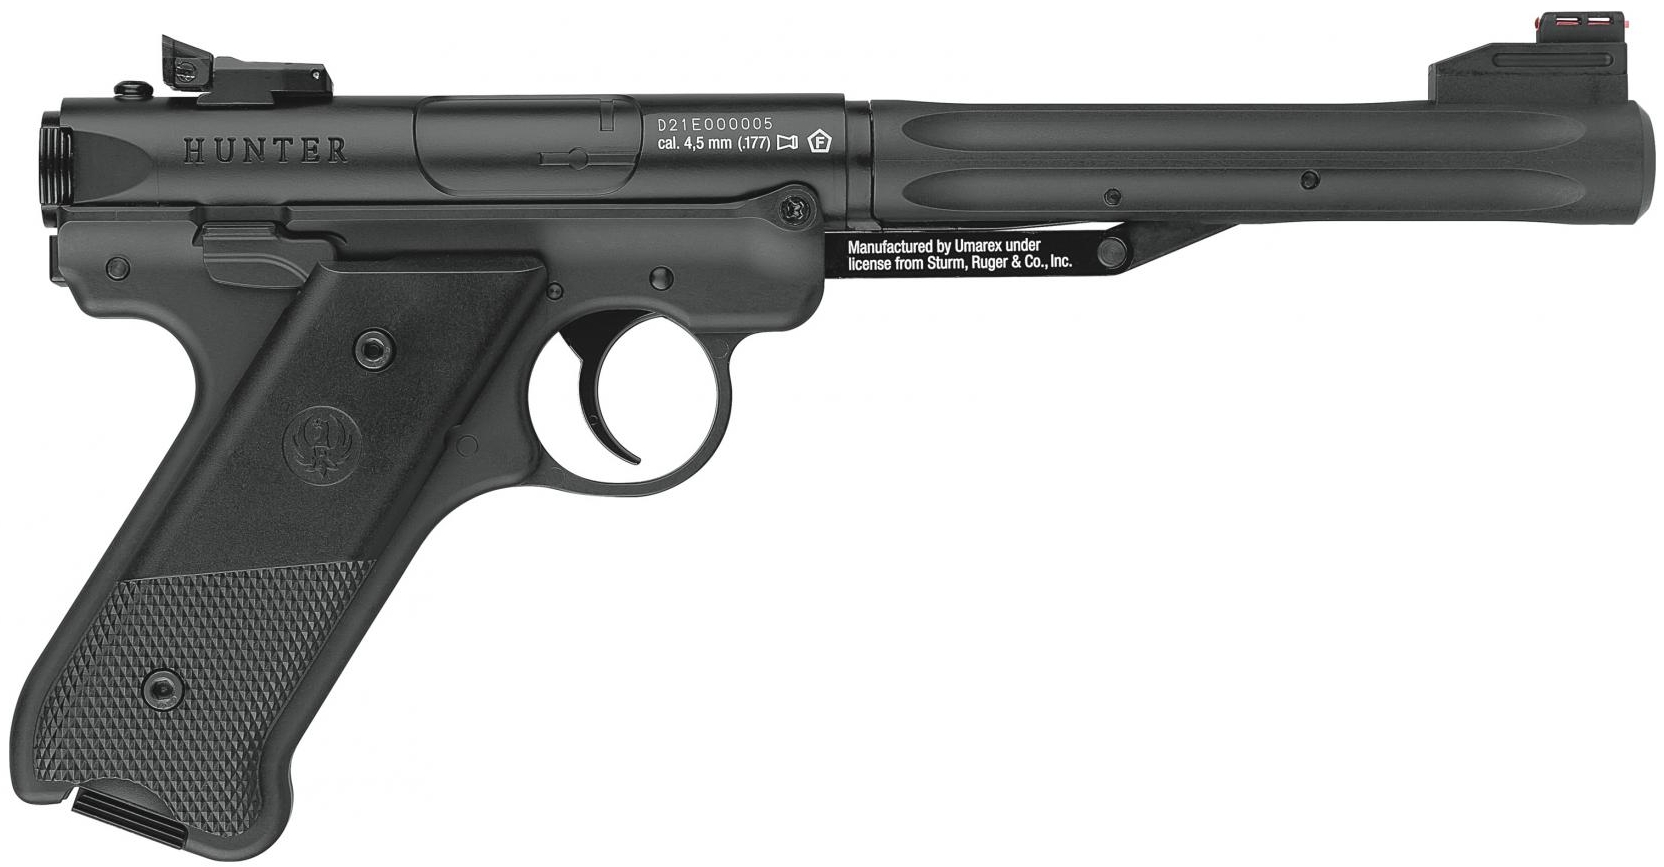 Umarex Ruger Mark IV .177 Air Pistol